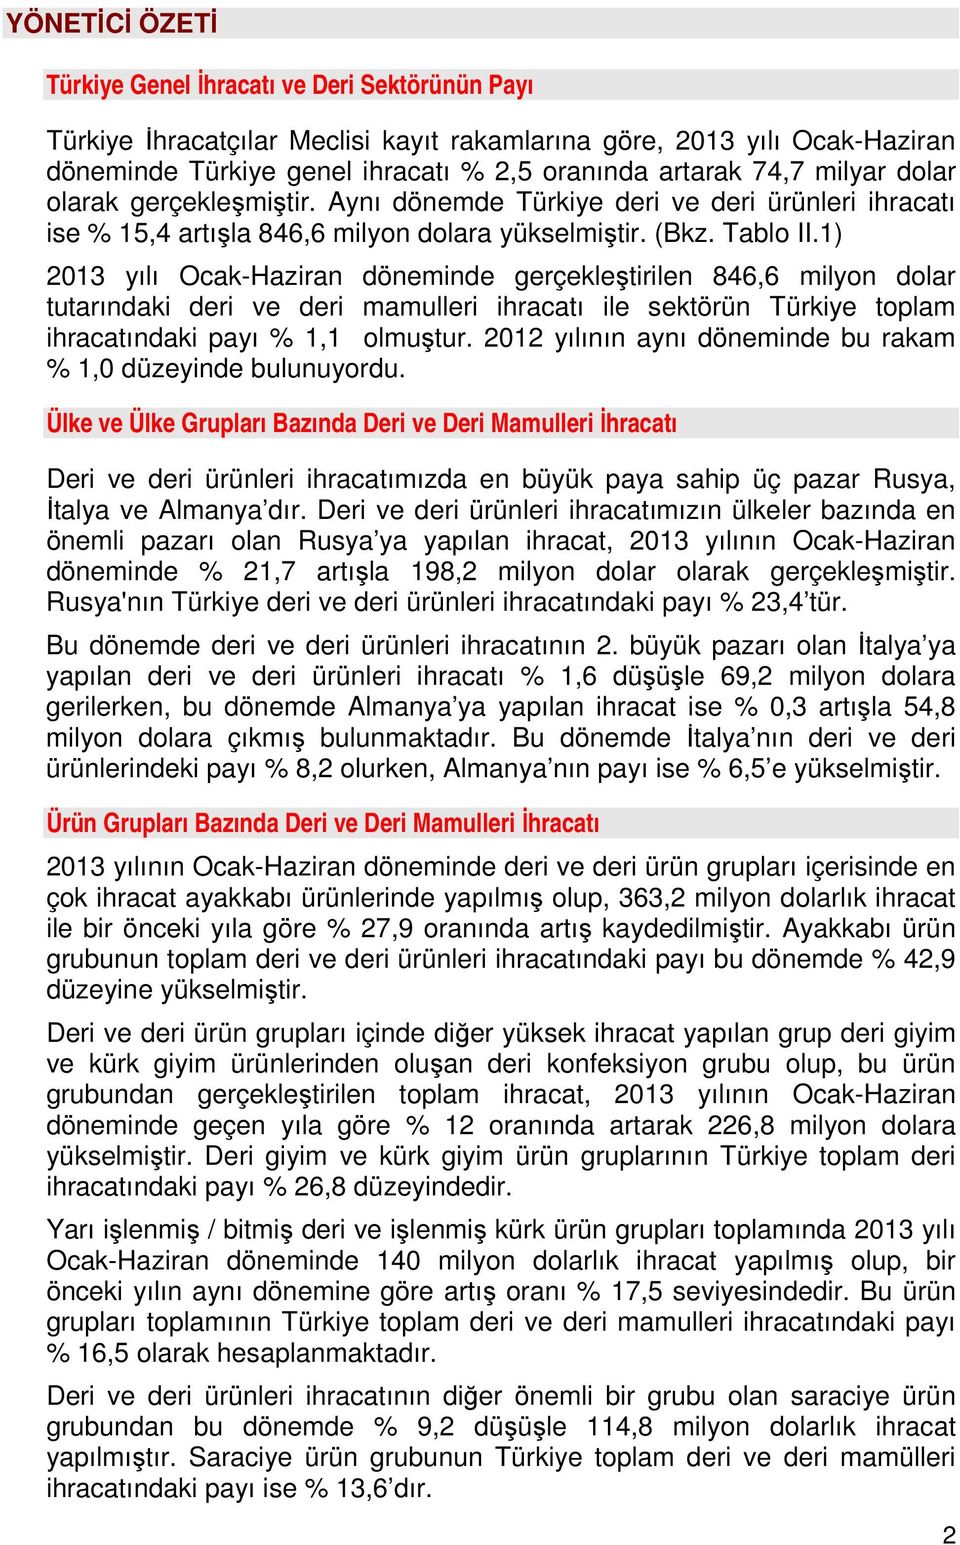 1) 2013 yılı Ocak-Haziran döneminde gerçekleştirilen 846,6 milyon dolar tutarındaki deri ve deri mamulleri ihracatı ile sektörün Türkiye toplam ihracatındaki payı % 1,1 olmuştur.